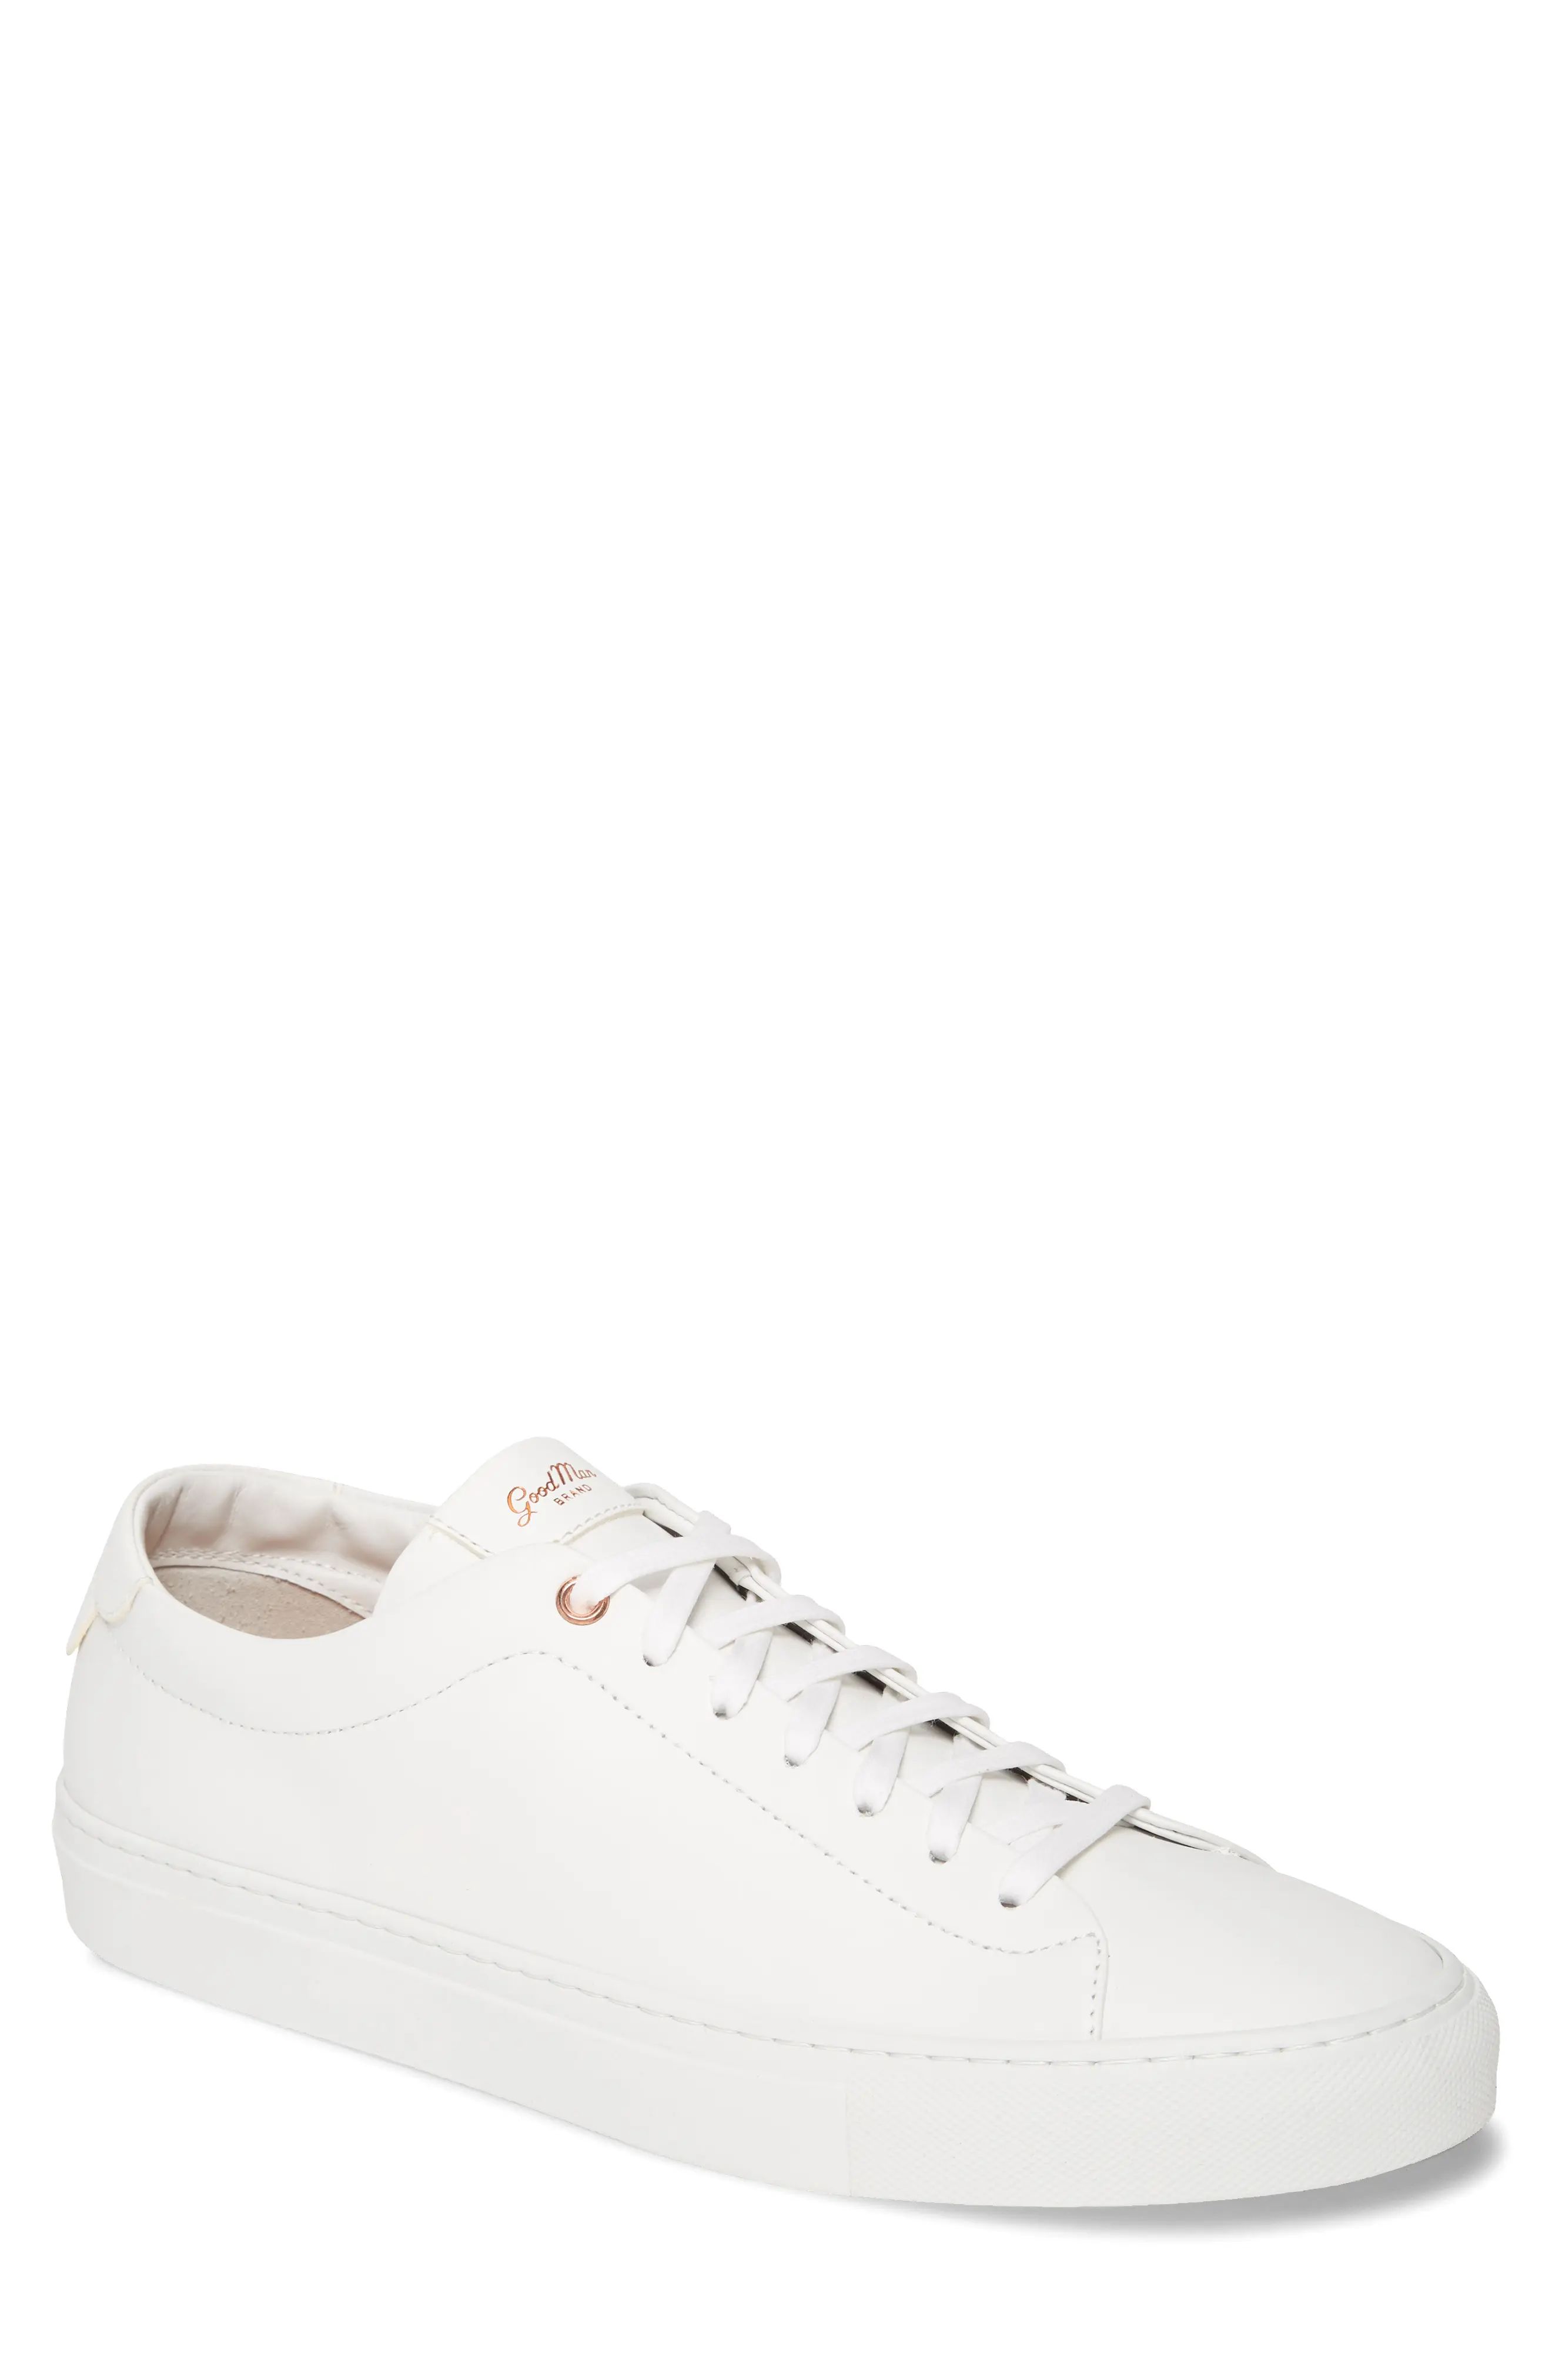 Men's Good Man Brand Edge Sneaker, Size 9 M - White | Nordstrom